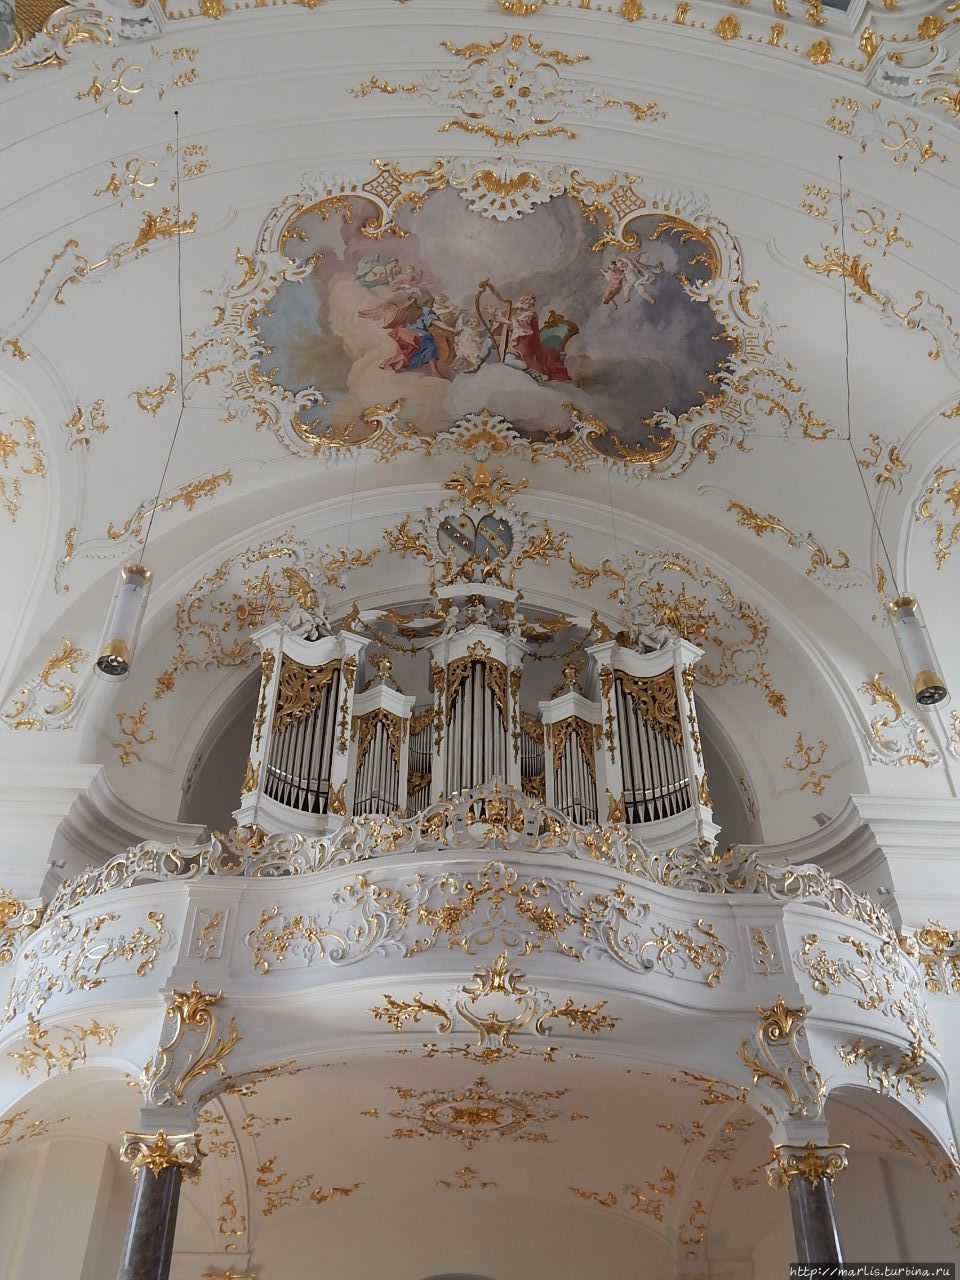 Фреска над органом изображает царя Давида, играющего на арфе Шэфтларн, Германия